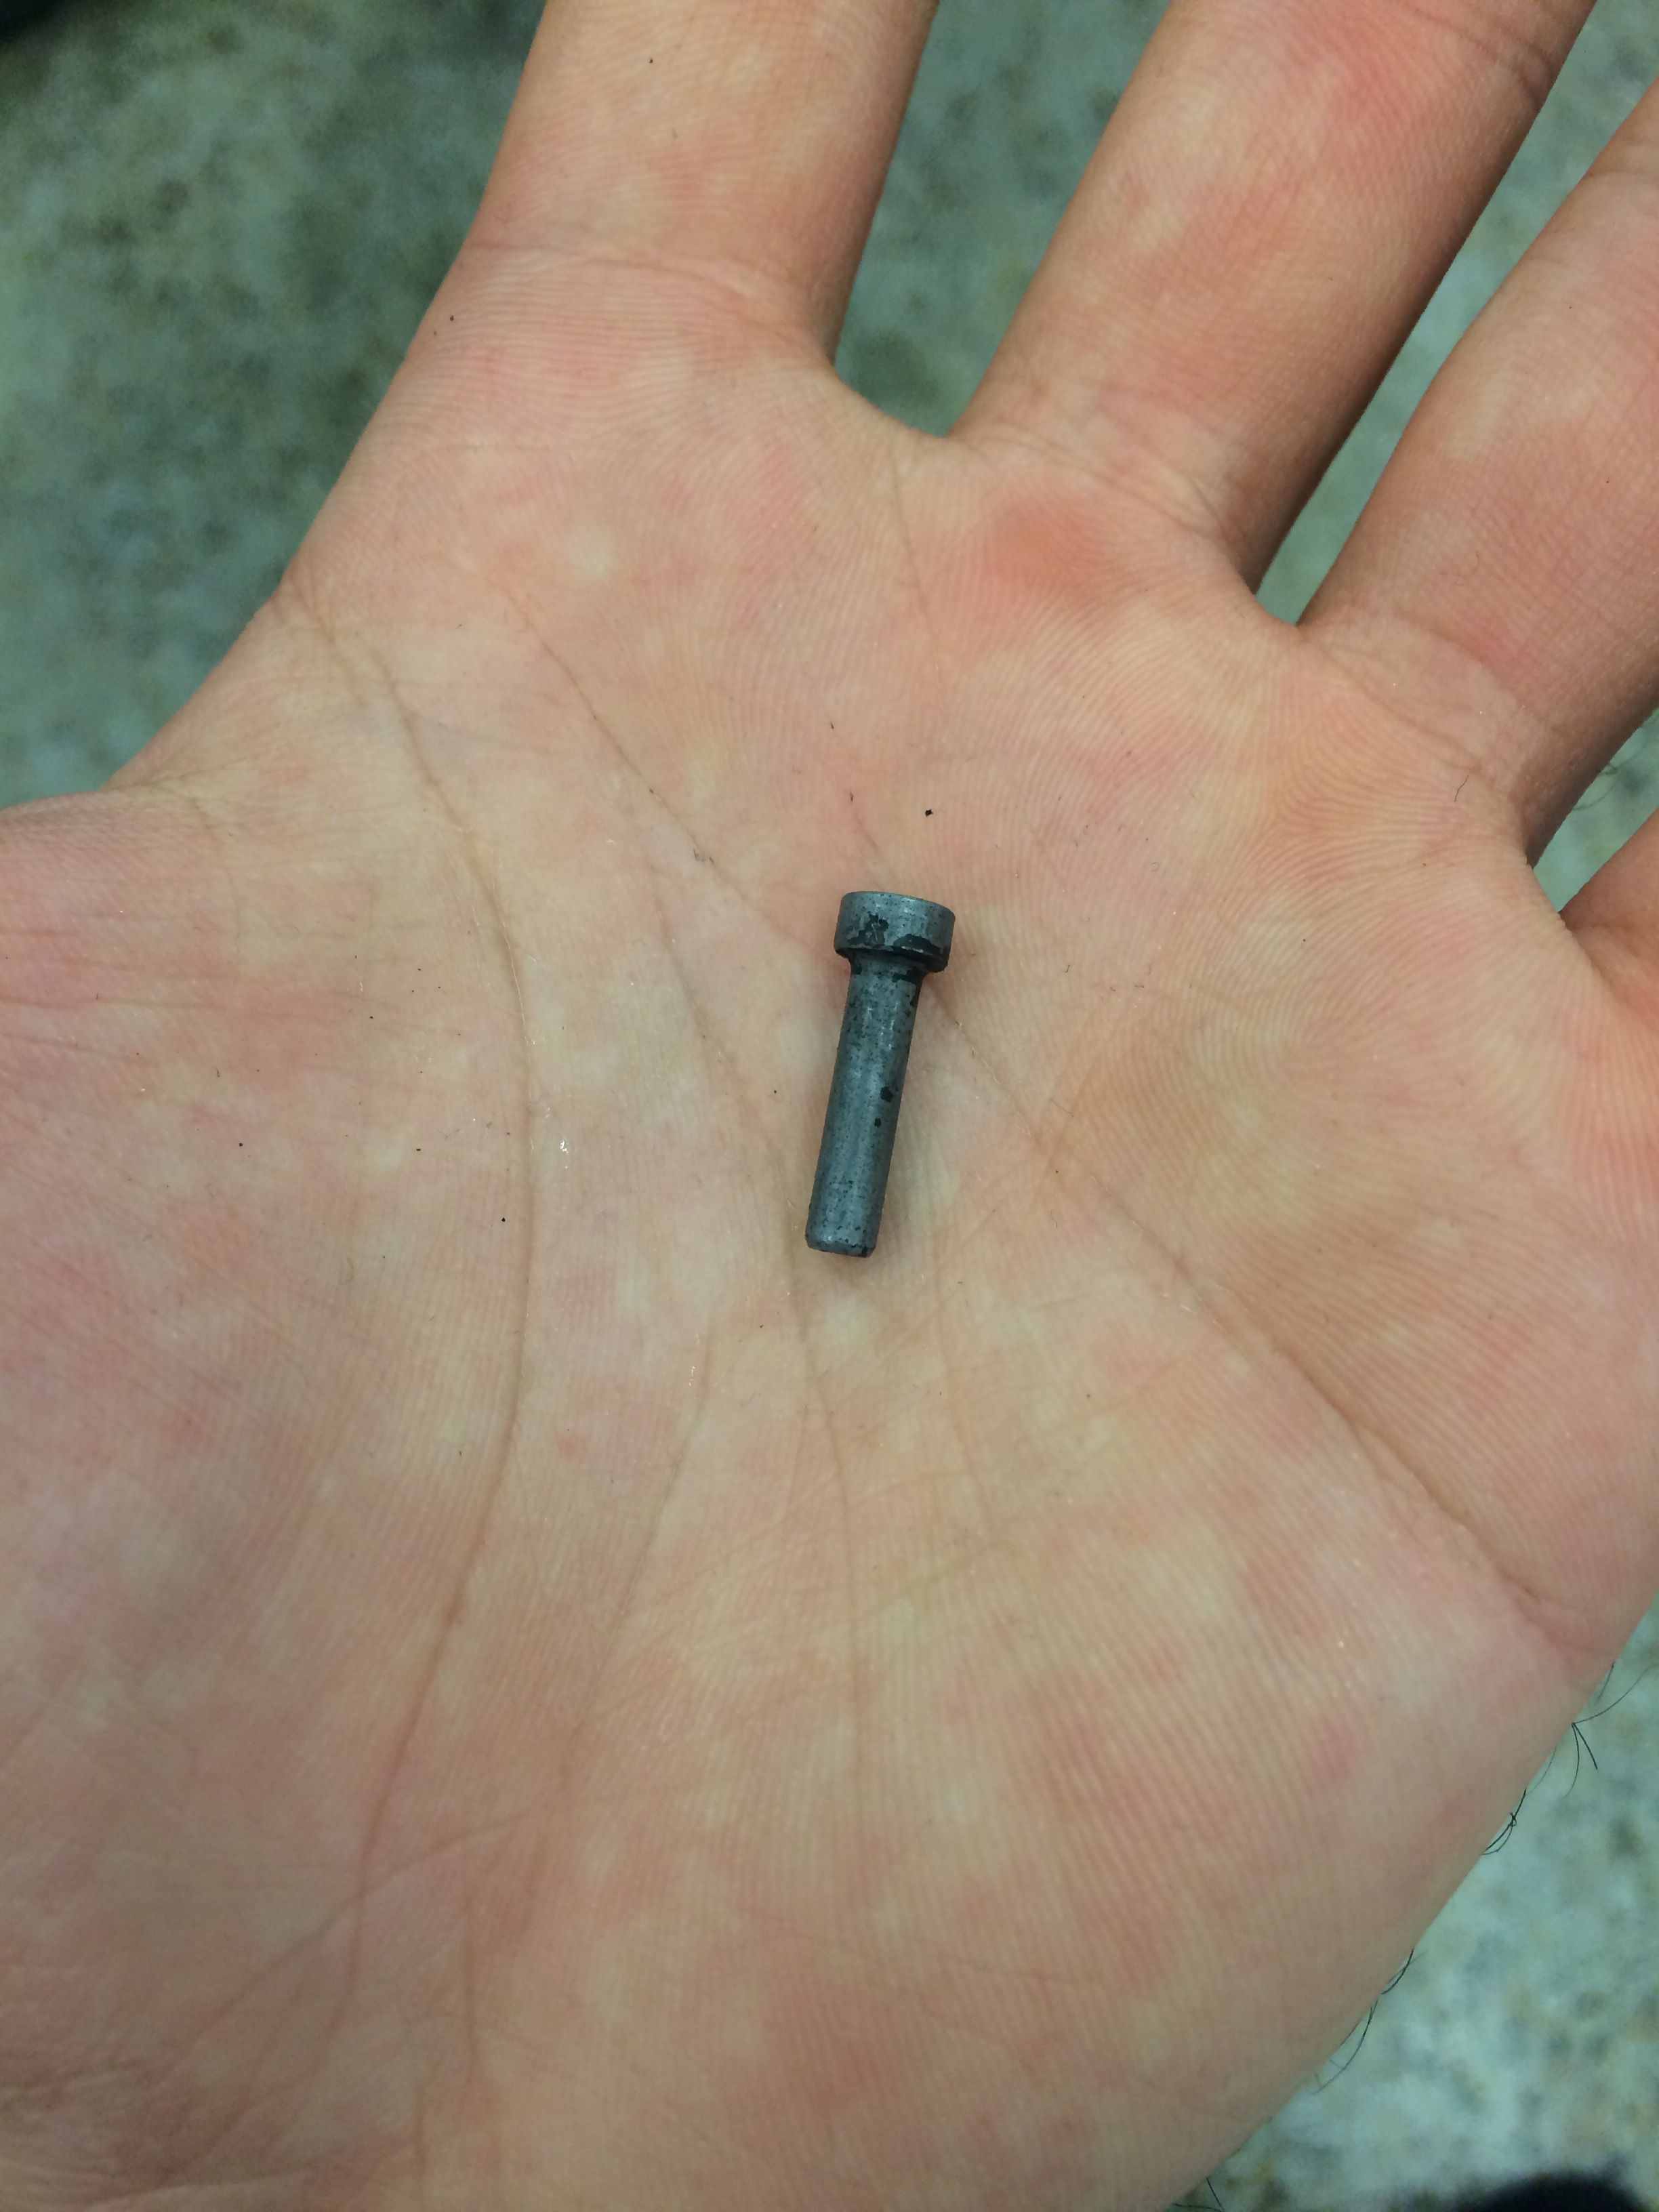  The hardened pin 